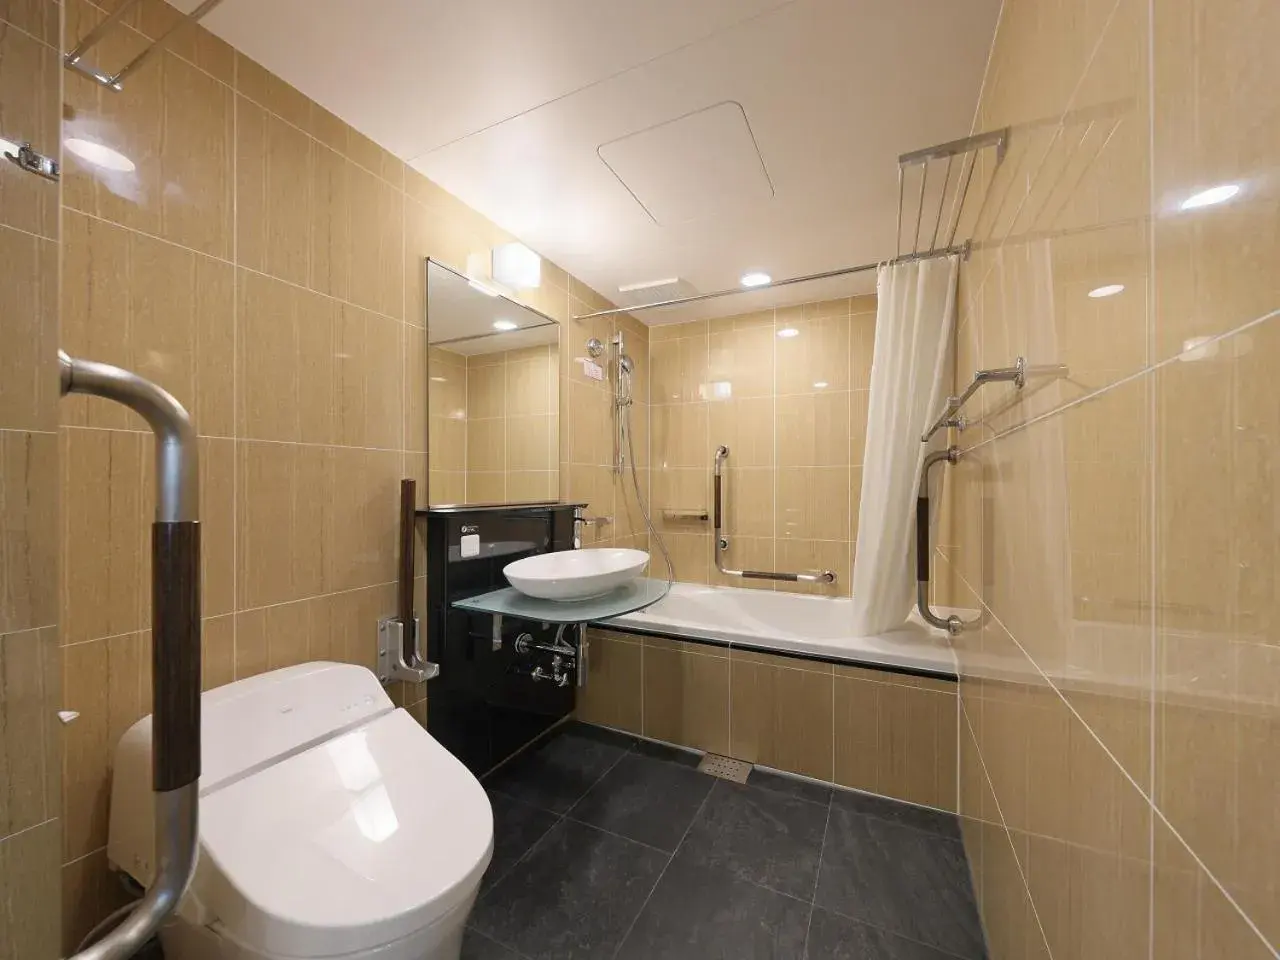 Photo of the whole room, Bathroom in APA Hotel Nihombashi Bakuroyokoyama Ekimae